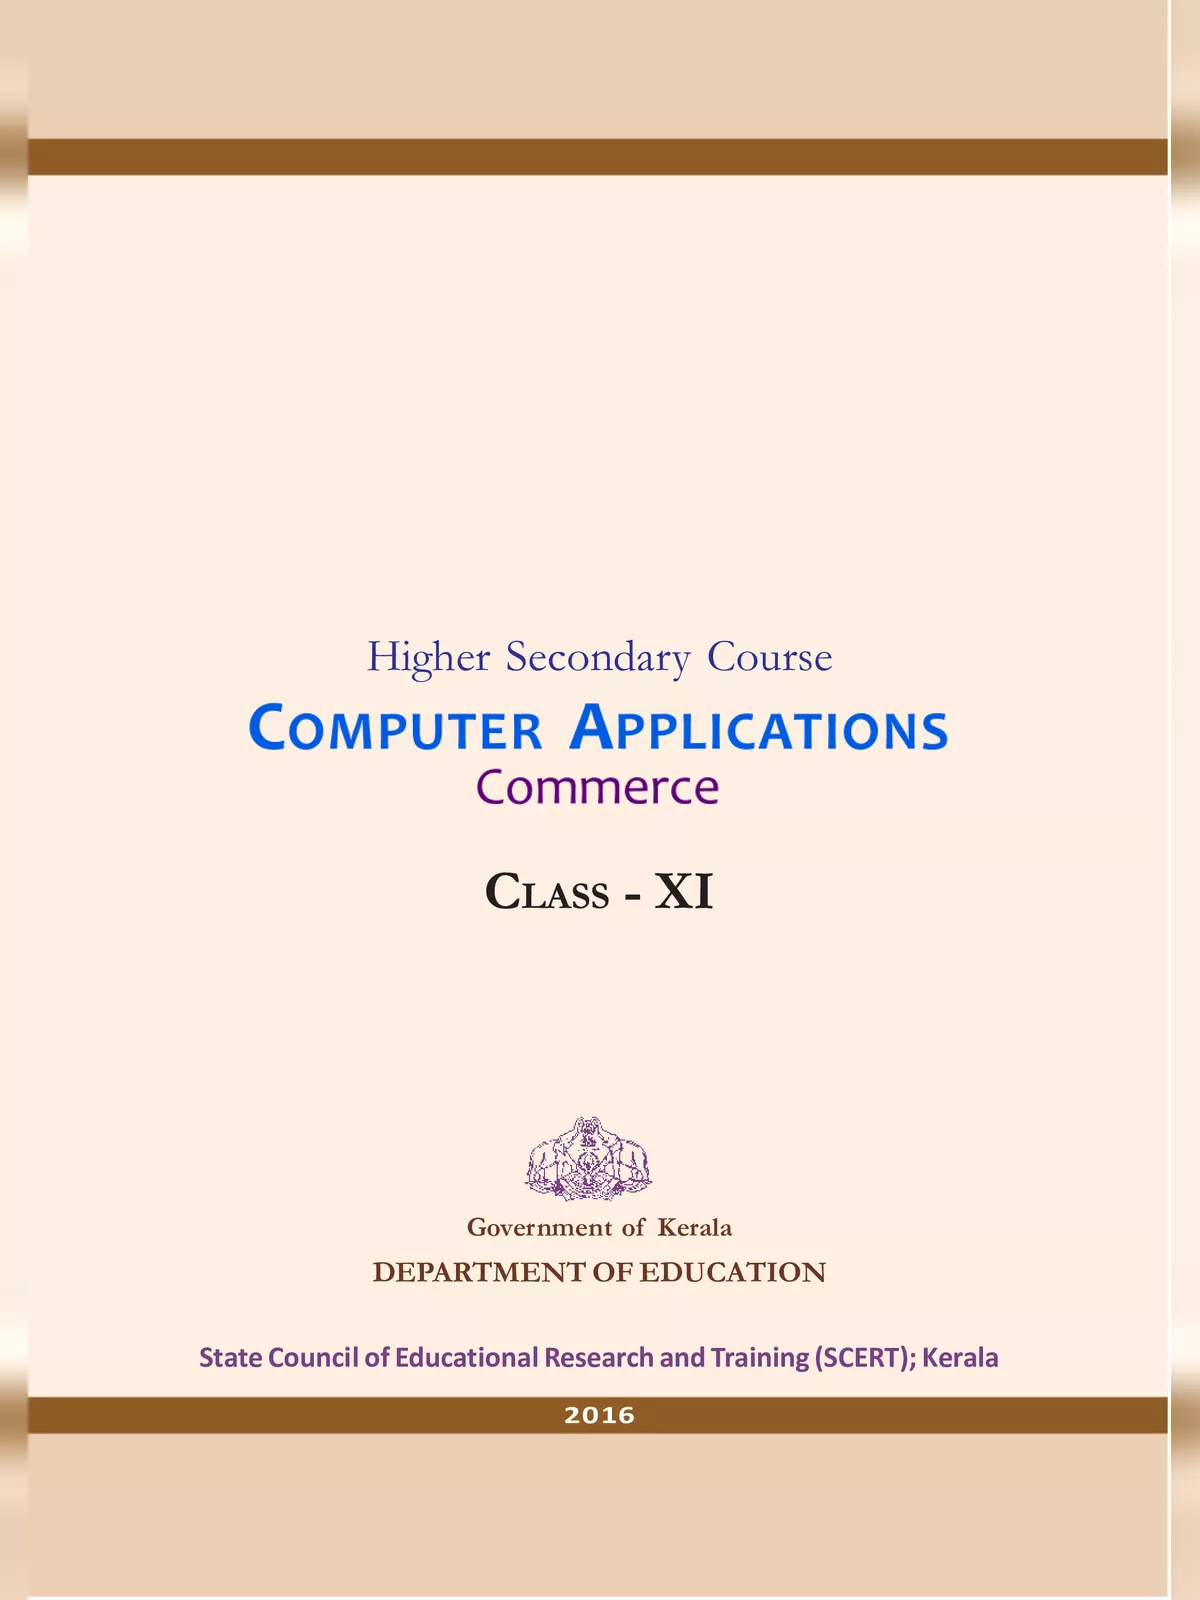 Computer Application Class 11